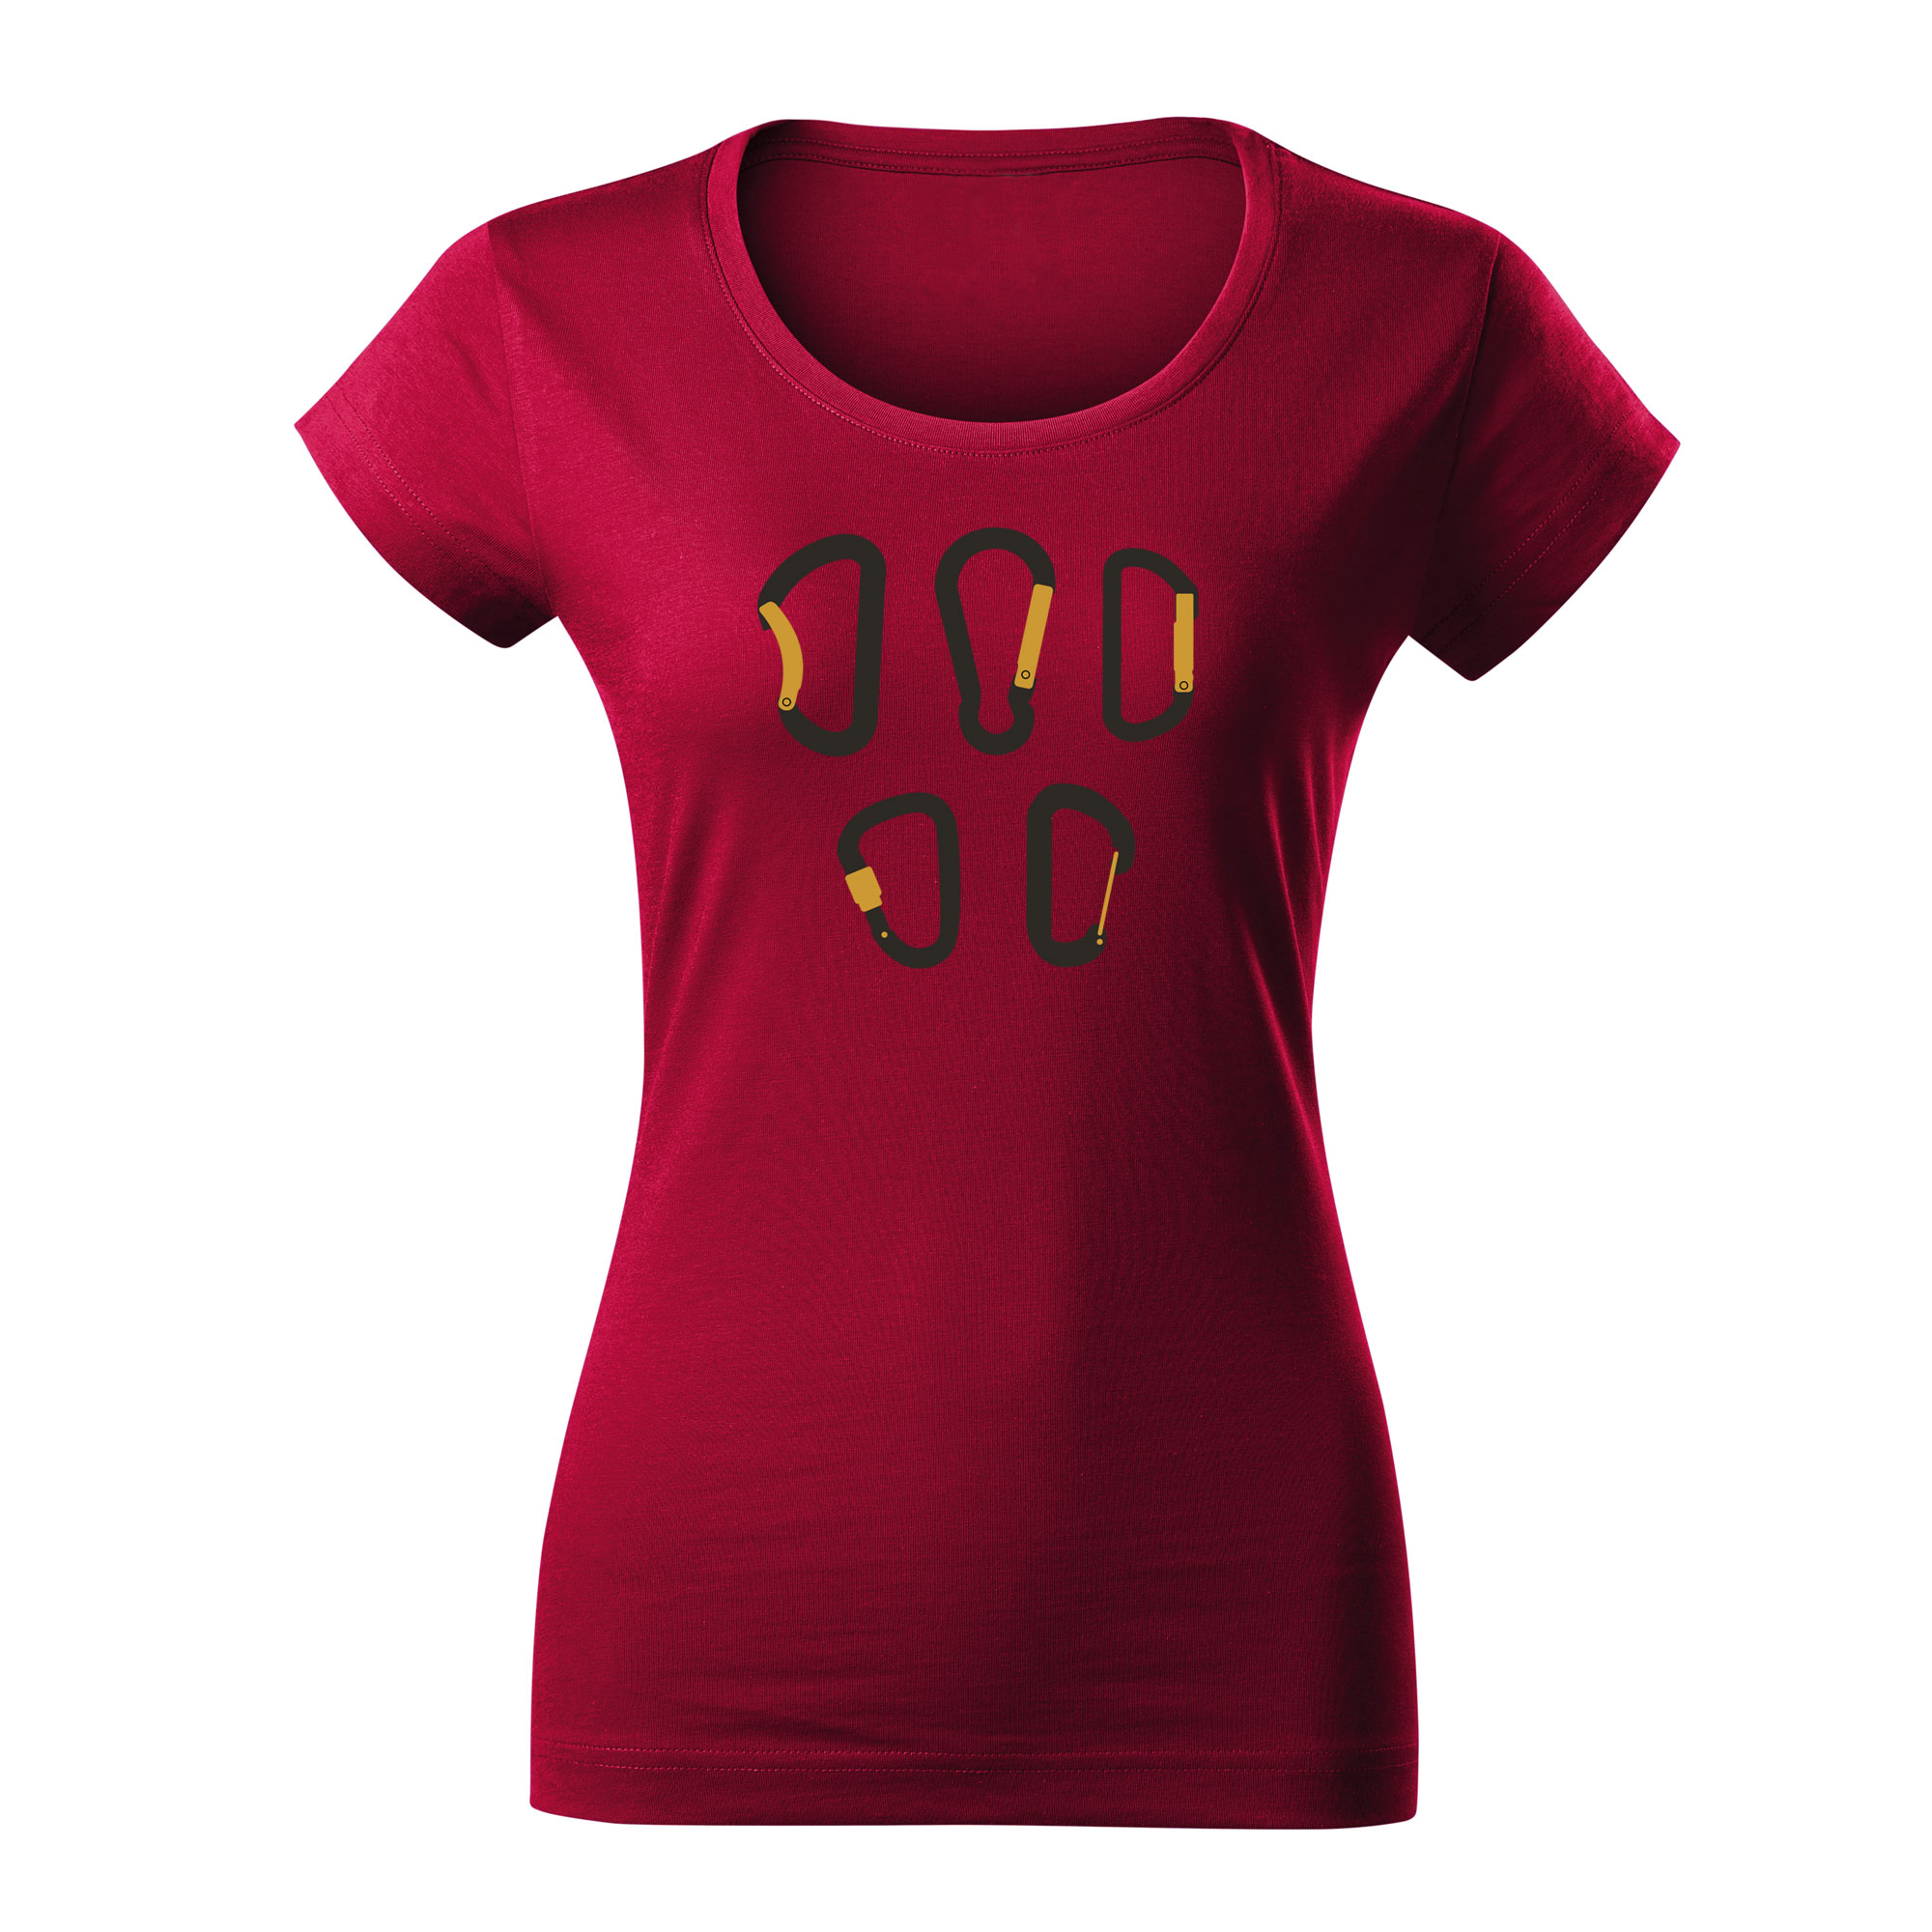 KARABINY - dámské triko tmavě červená